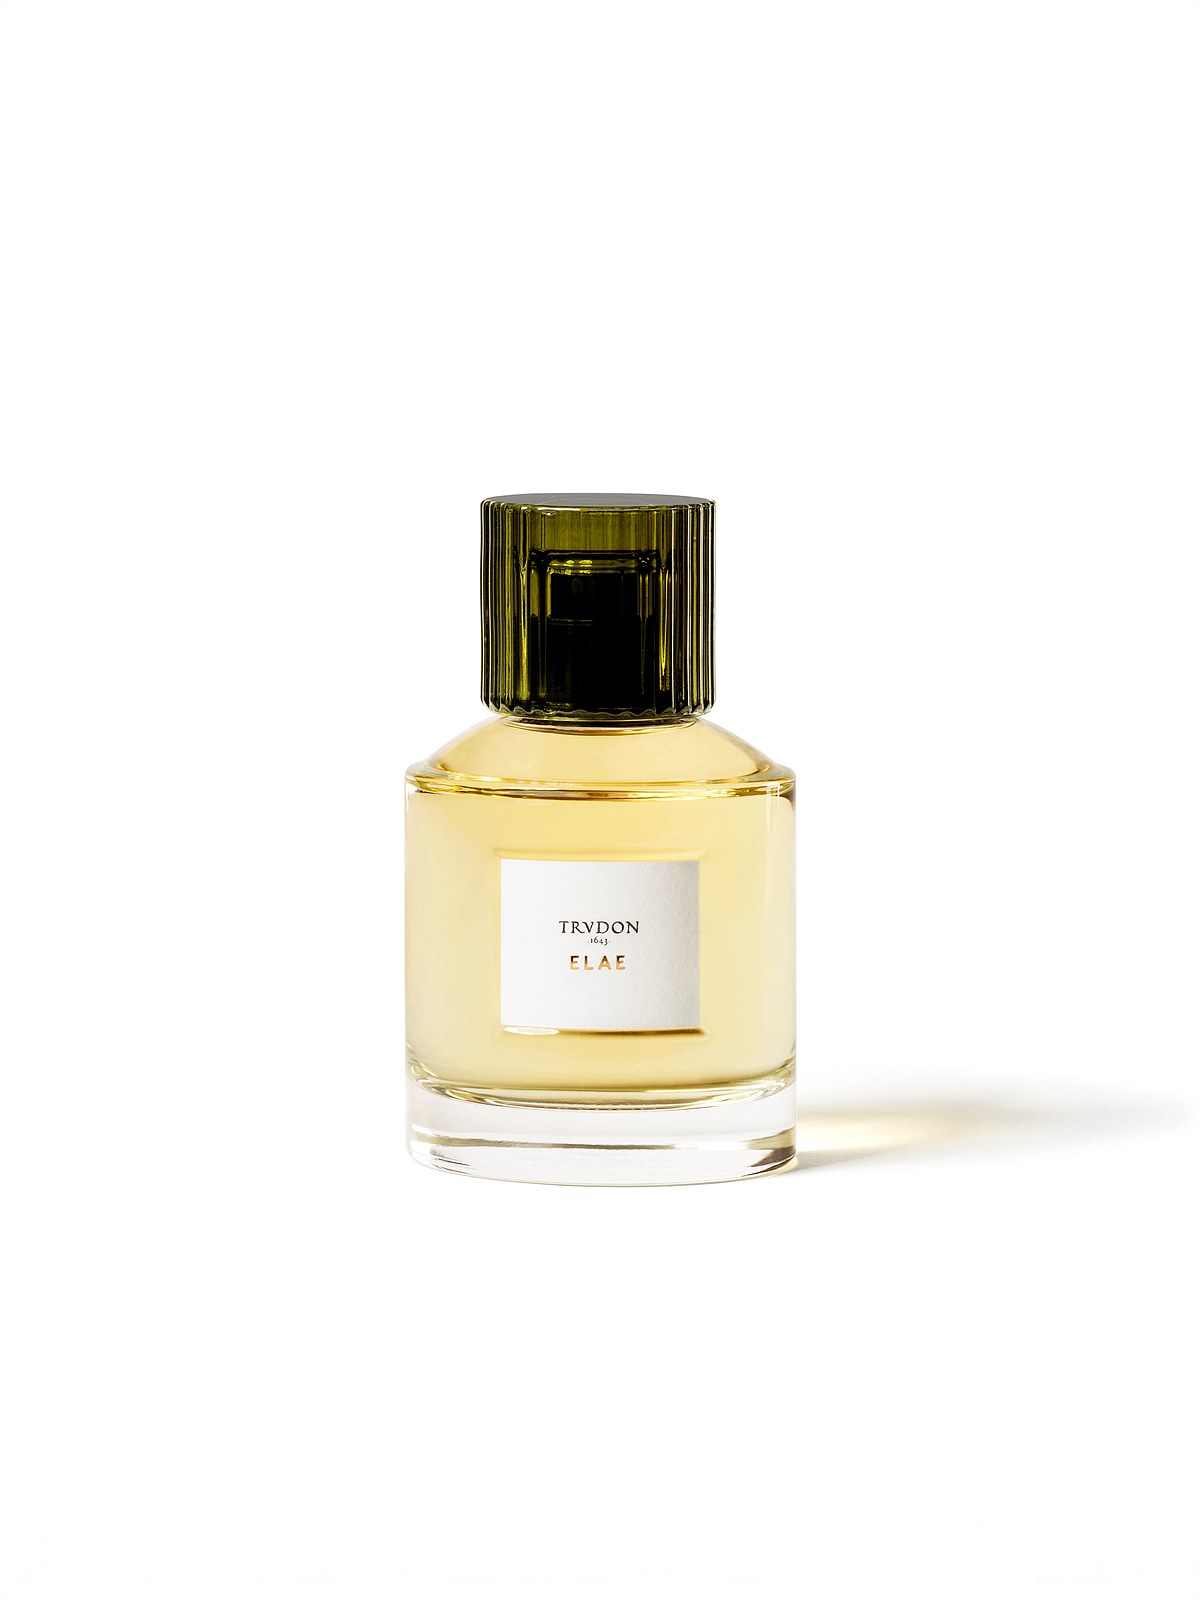 Trudon Parfums -Flacon Elae - 300dpi